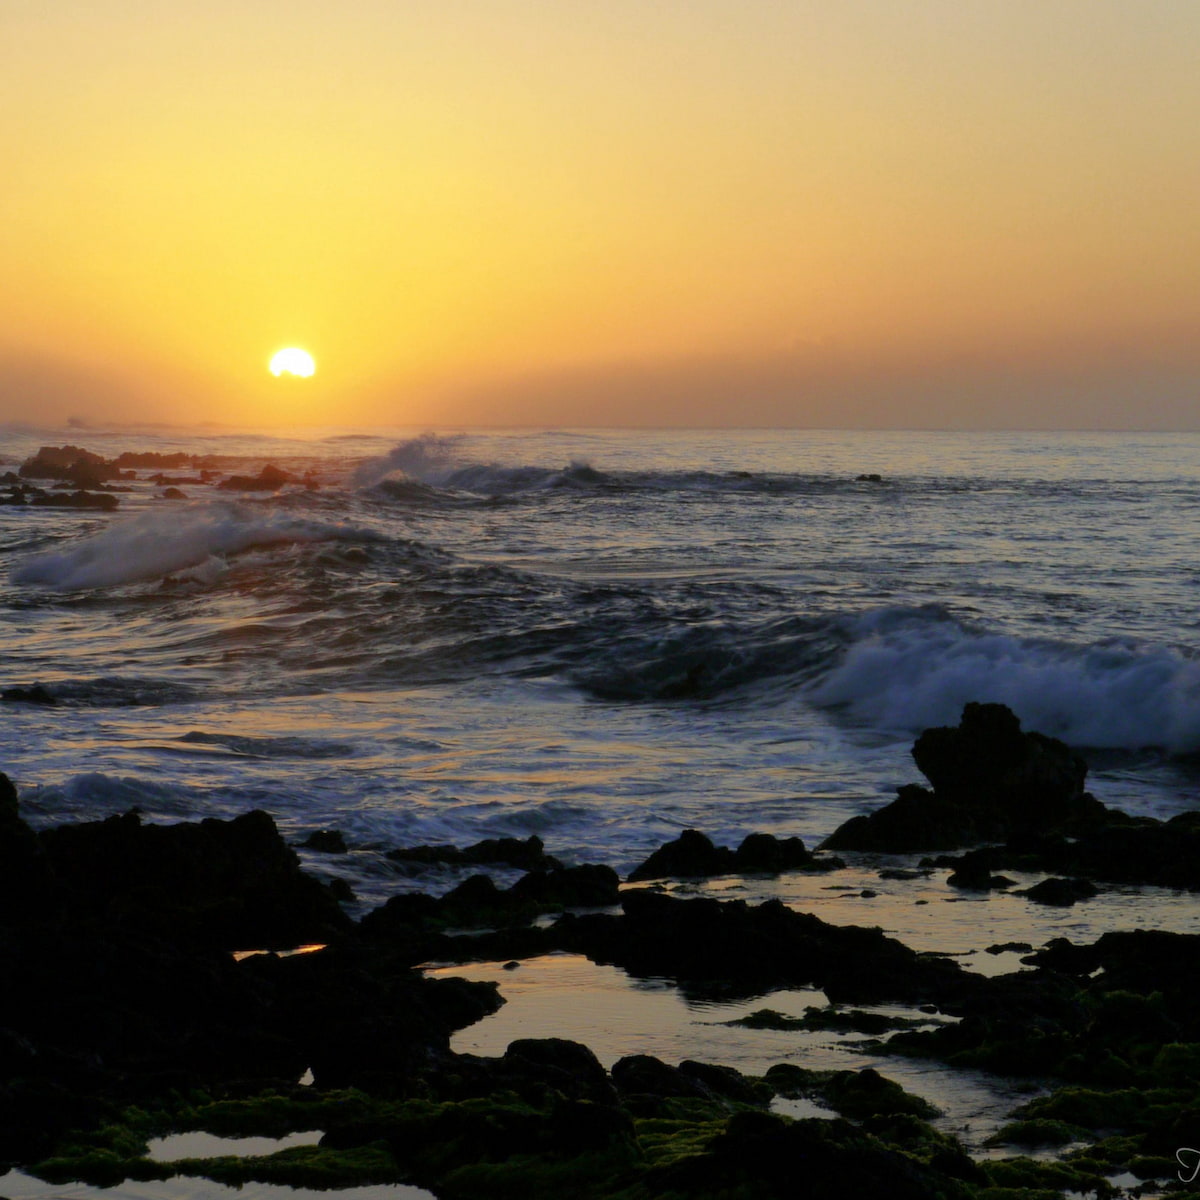 Sunrise on an Oahu beach.